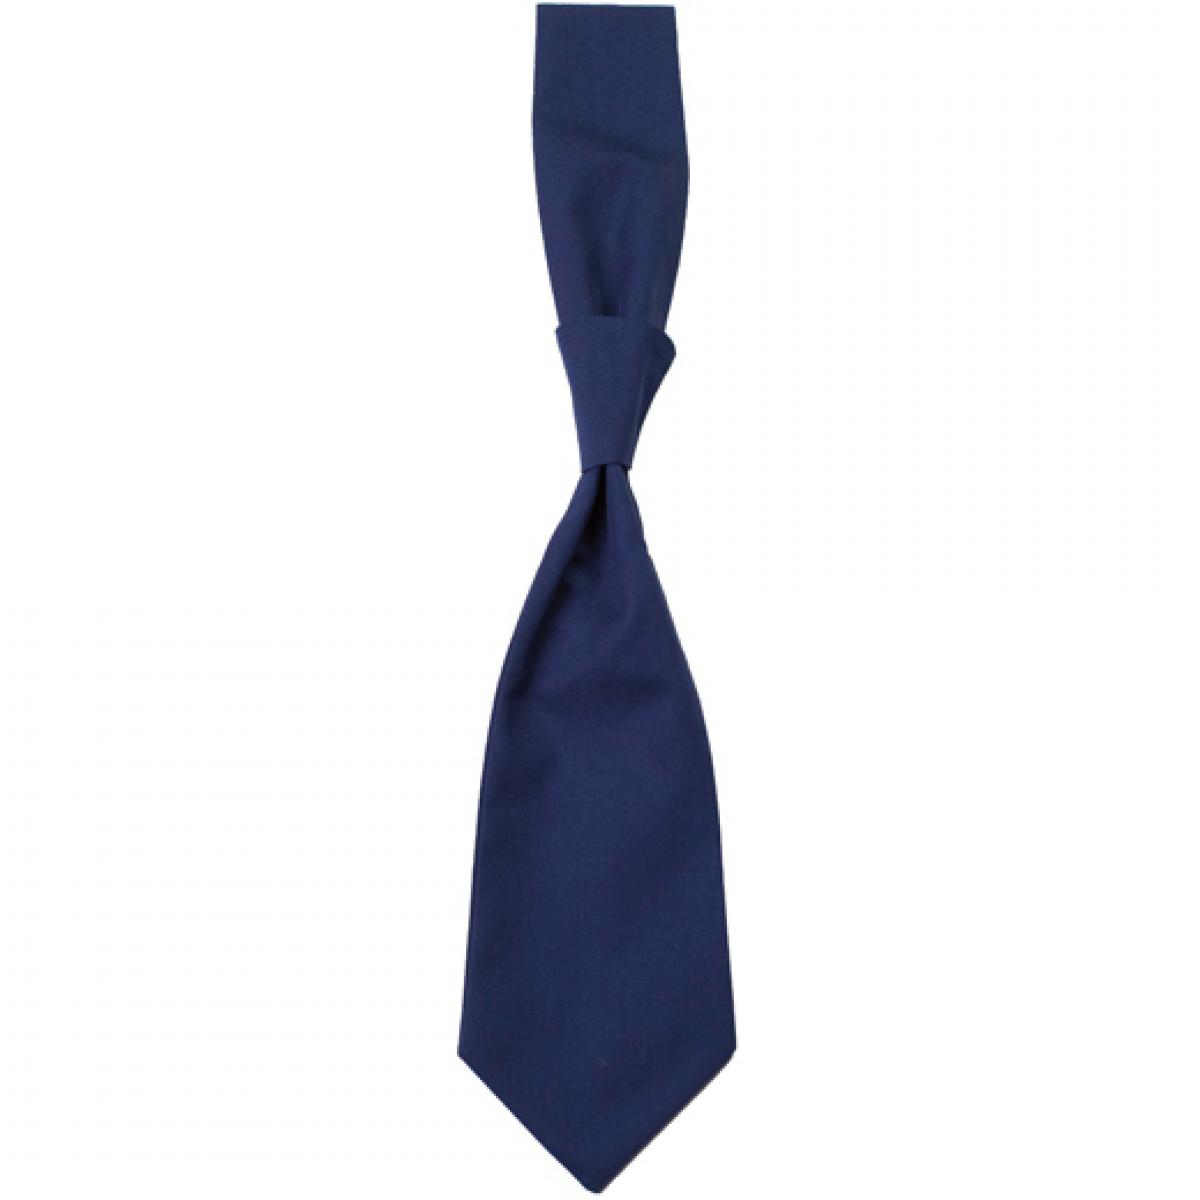 Hersteller: CG Workwear Herstellernummer: 01360-01 Artikelbezeichnung: Krawatte Messina / Zertifiziert nach Oeko-Tex 100 Farbe: Navy